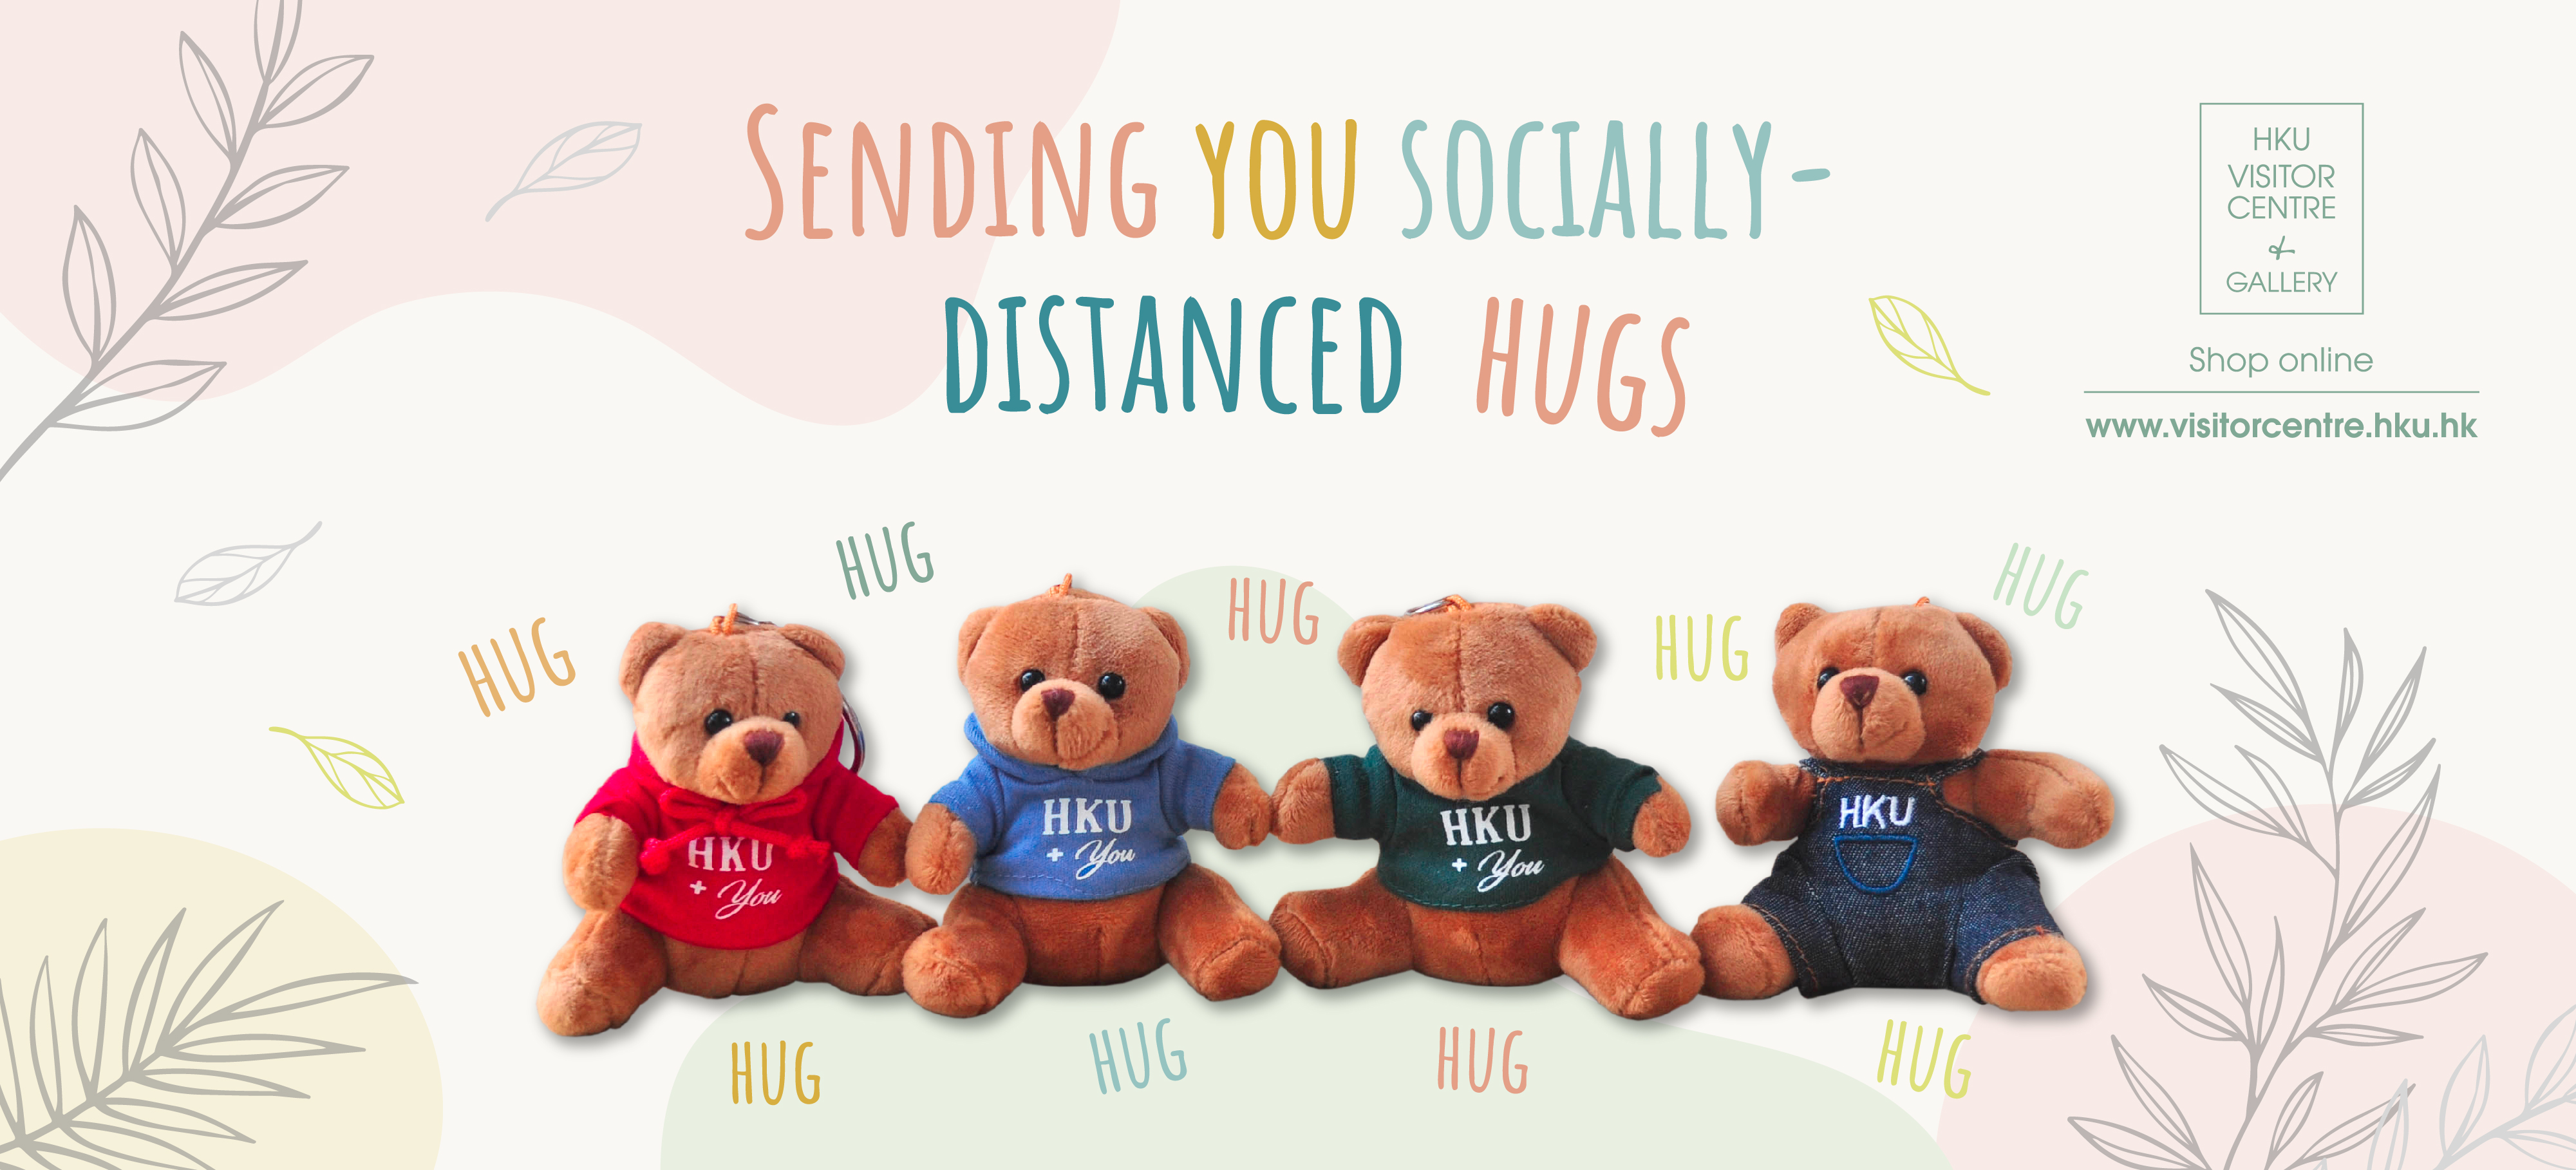 SENDING YOU SOCIALLY-DISTANCED HUGS